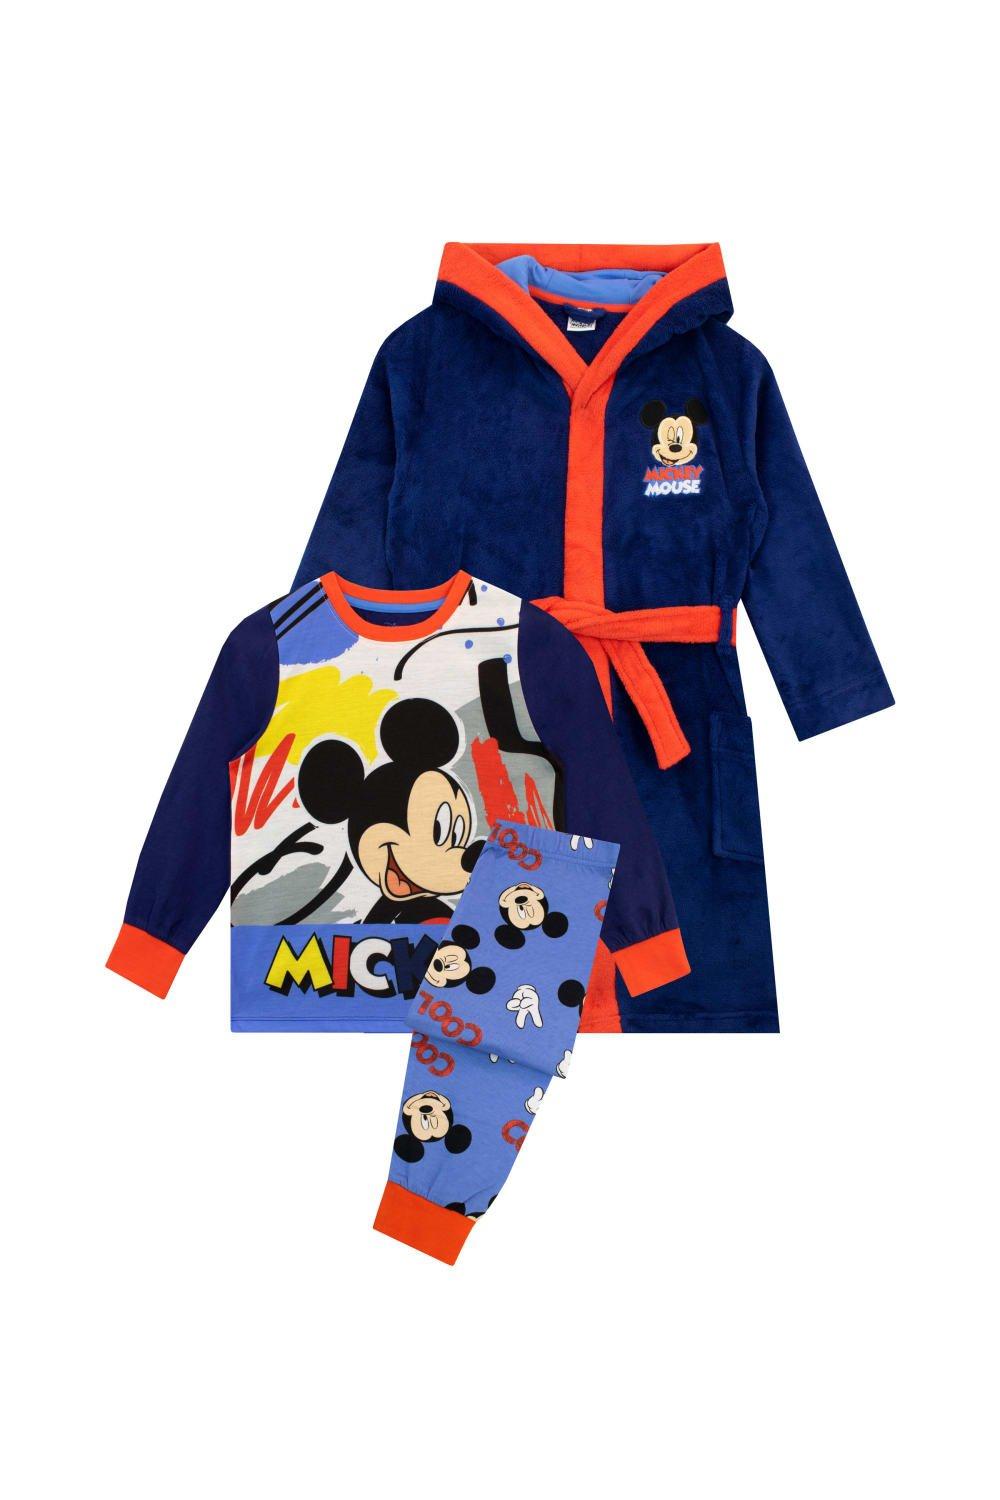 Комплект халата и пижамы с Микки Маусом Disney, синий одиночная распродажа 1 шт пряжка для обуви из пвх с микки маусом аксессуары для обуви с изображением героев диснея подвески для обуви укр